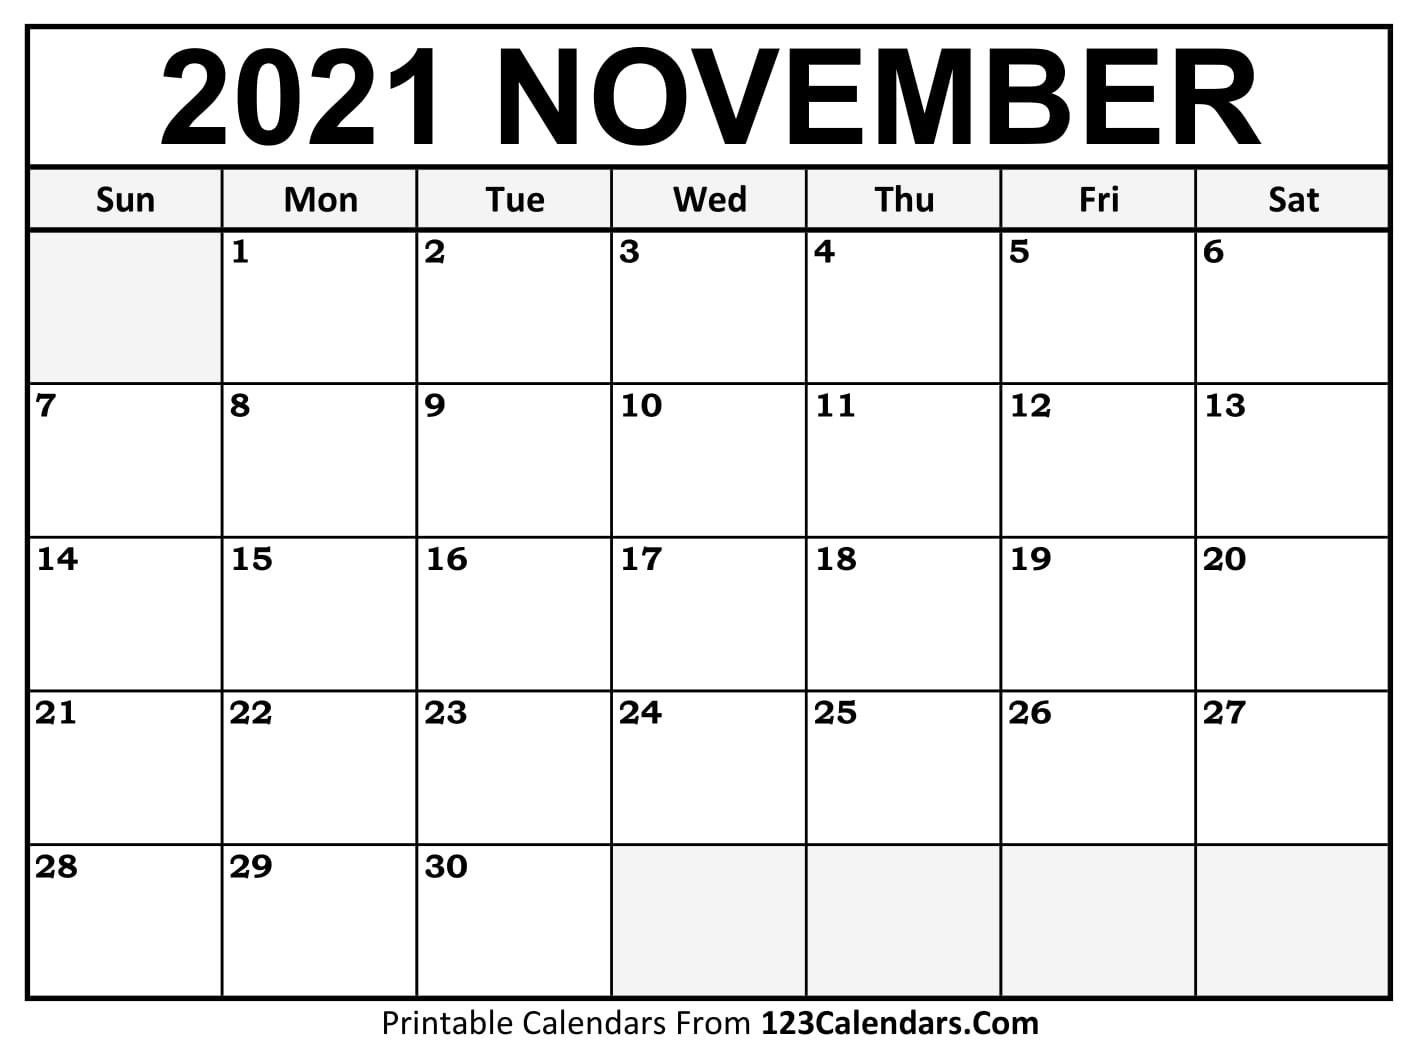 Printable November 2021 Calendar Templates - 123Calendars November December 2021 Calendar